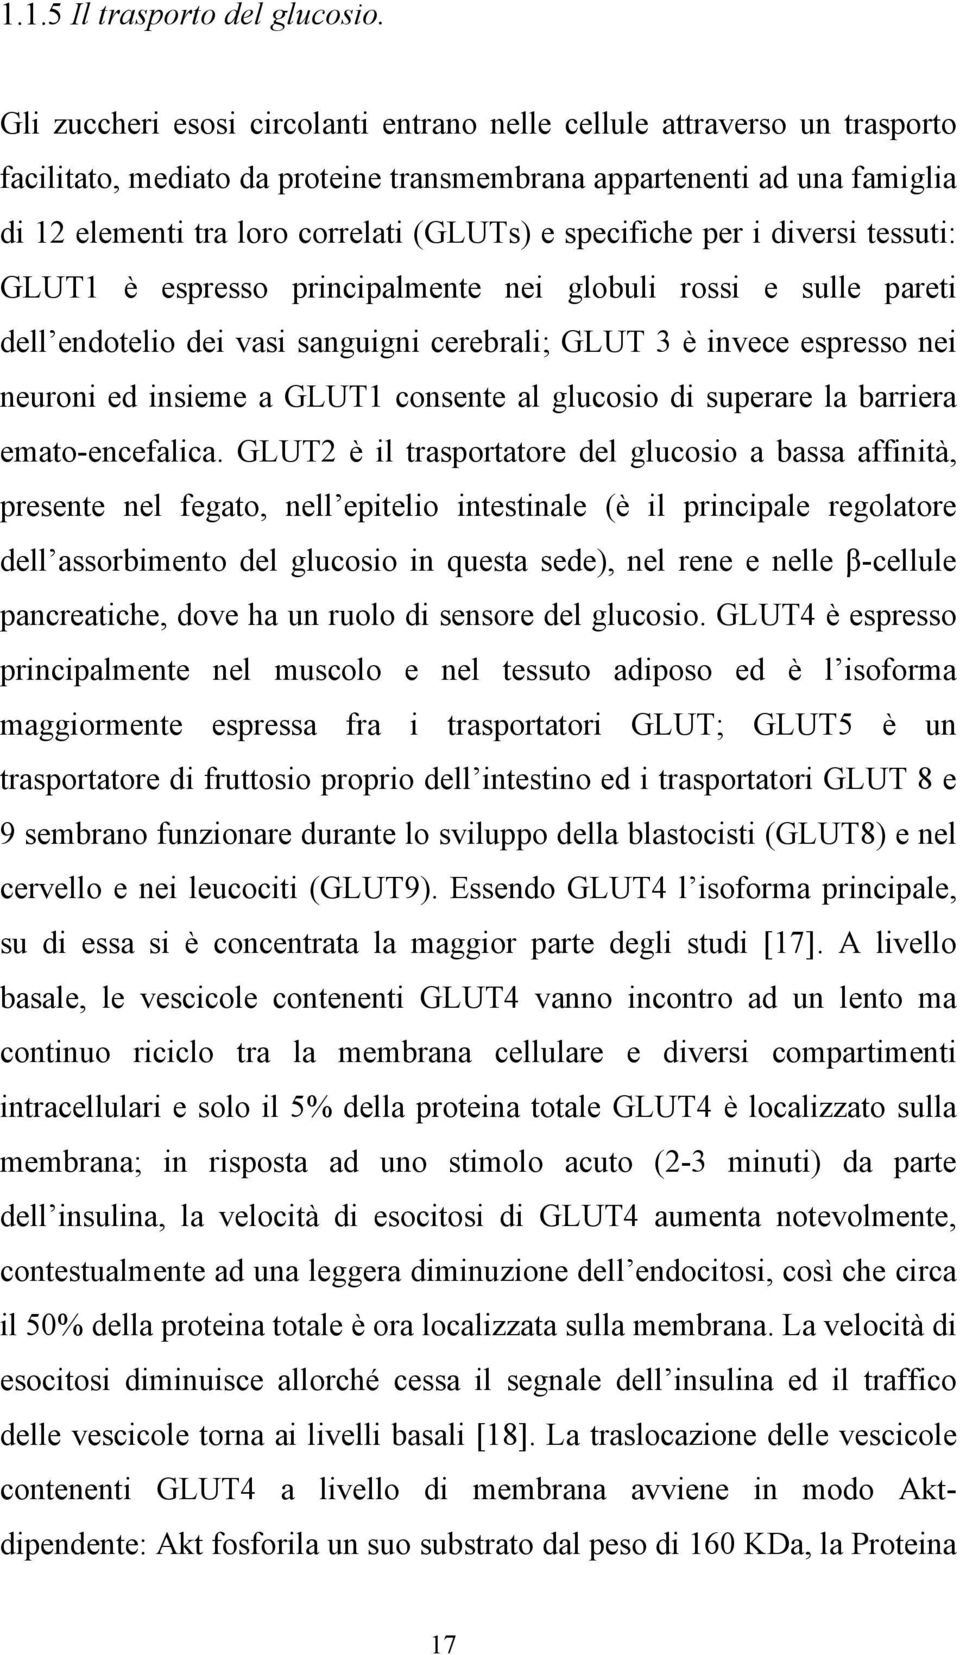 specifiche per i diversi tessuti: GLUT1 è espresso principalmente nei globuli rossi e sulle pareti dell endotelio dei vasi sanguigni cerebrali; GLUT 3 è invece espresso nei neuroni ed insieme a GLUT1